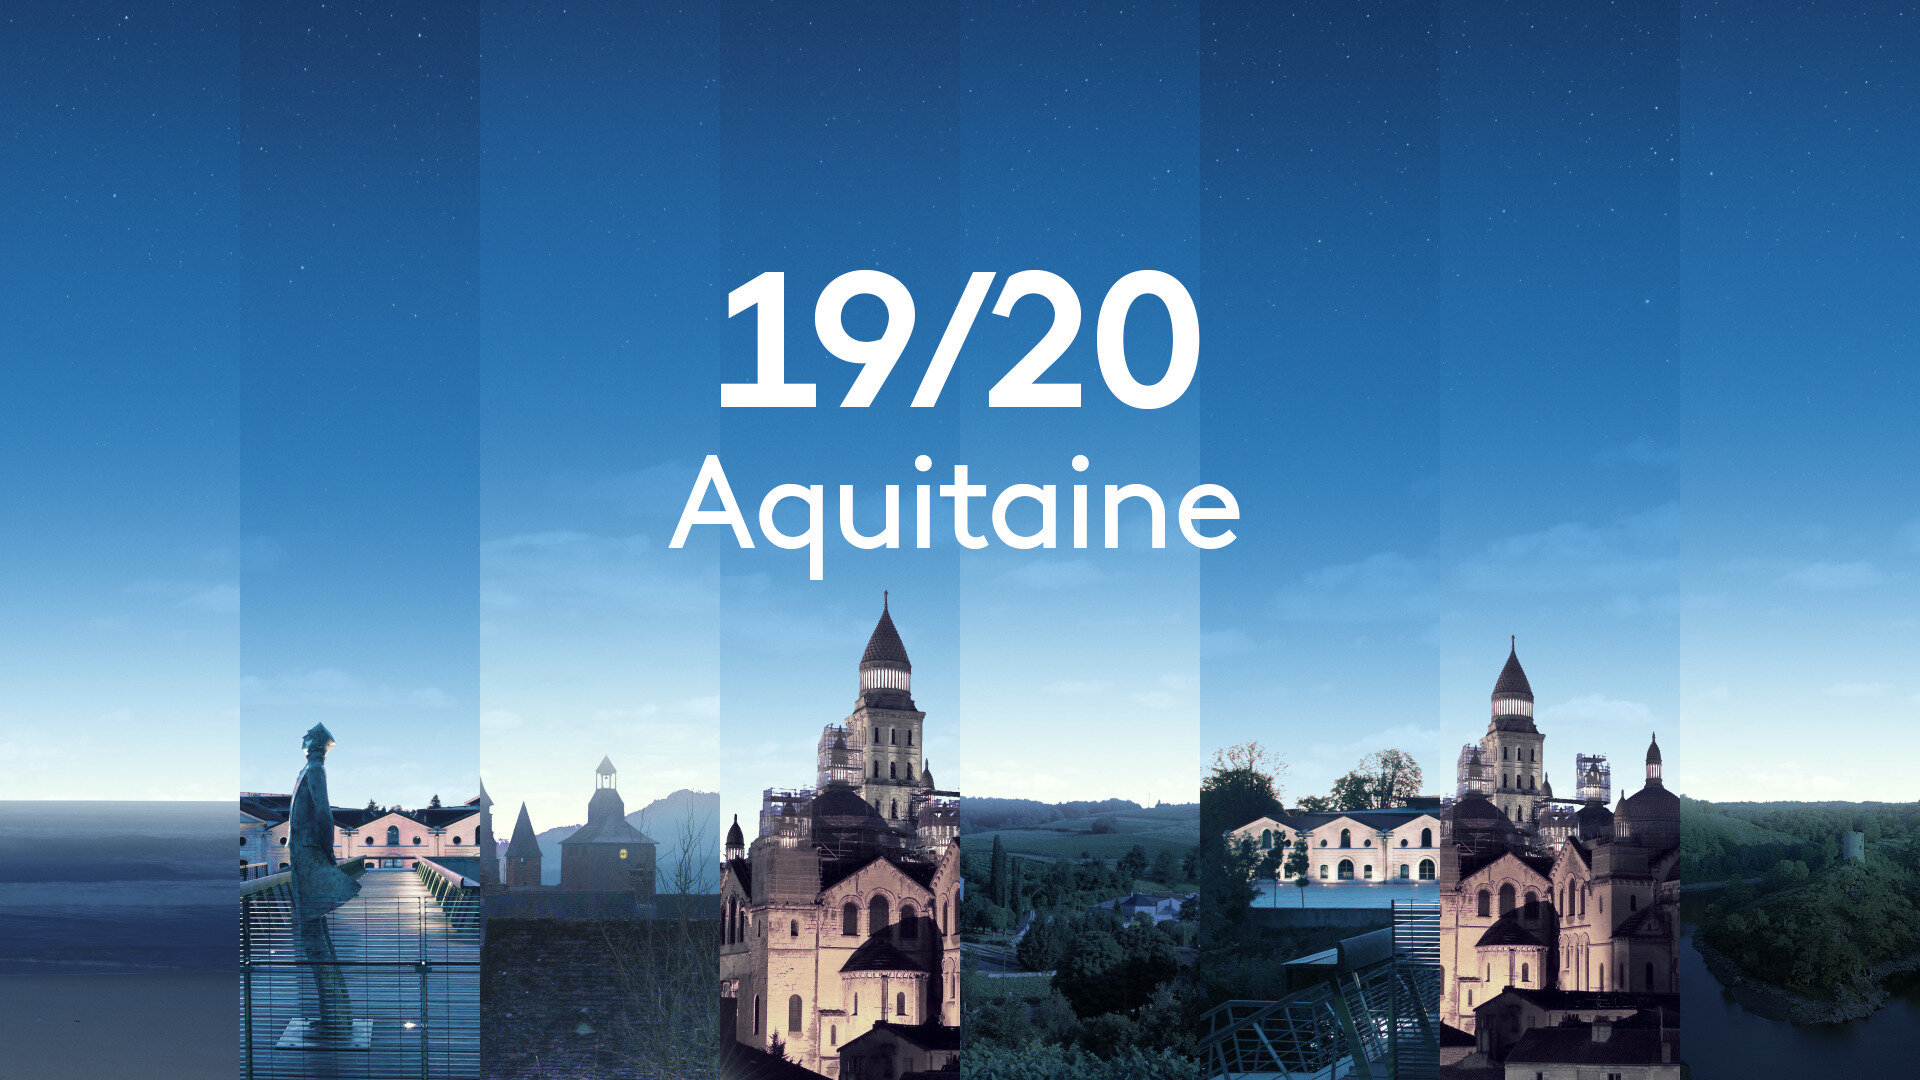 19/20 Aquitaine